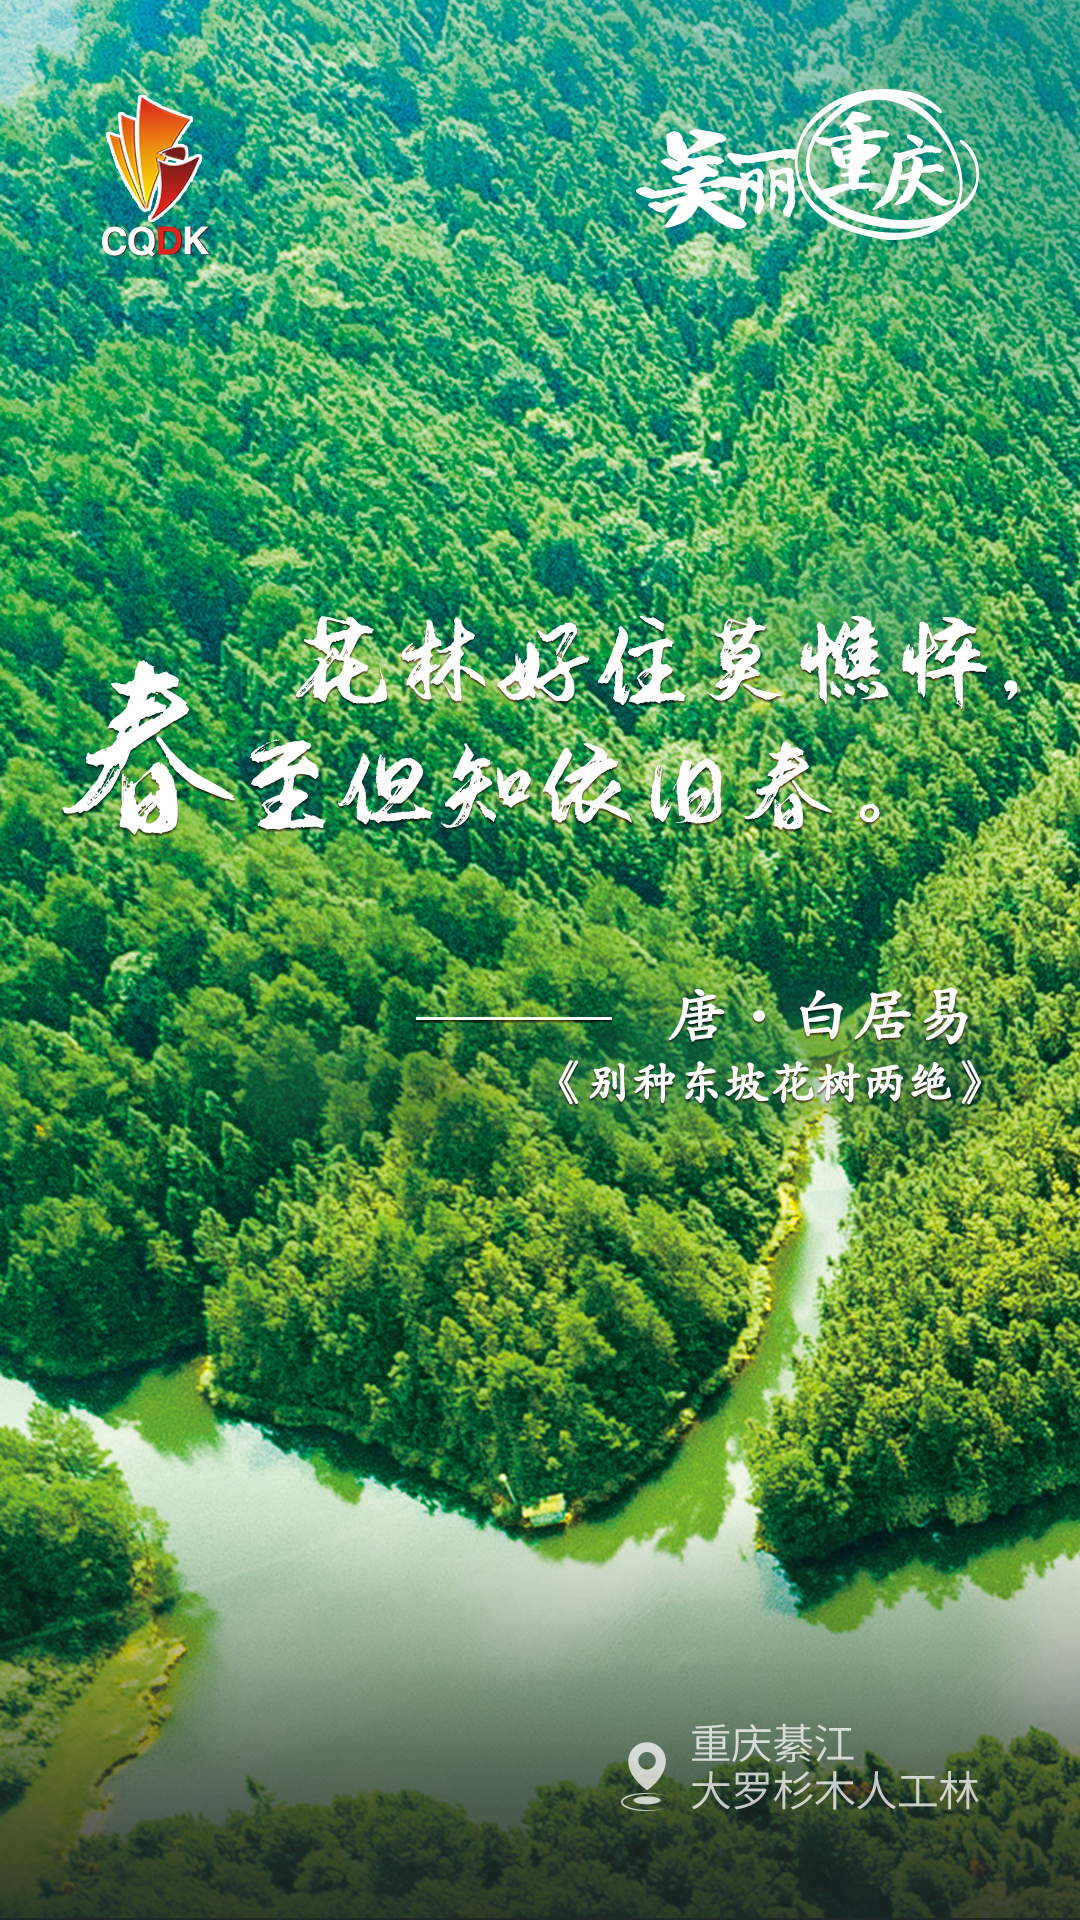 今天重庆召开美丽重庆建设大会，11张海报、11首古诗，带你看遍美丽重庆6